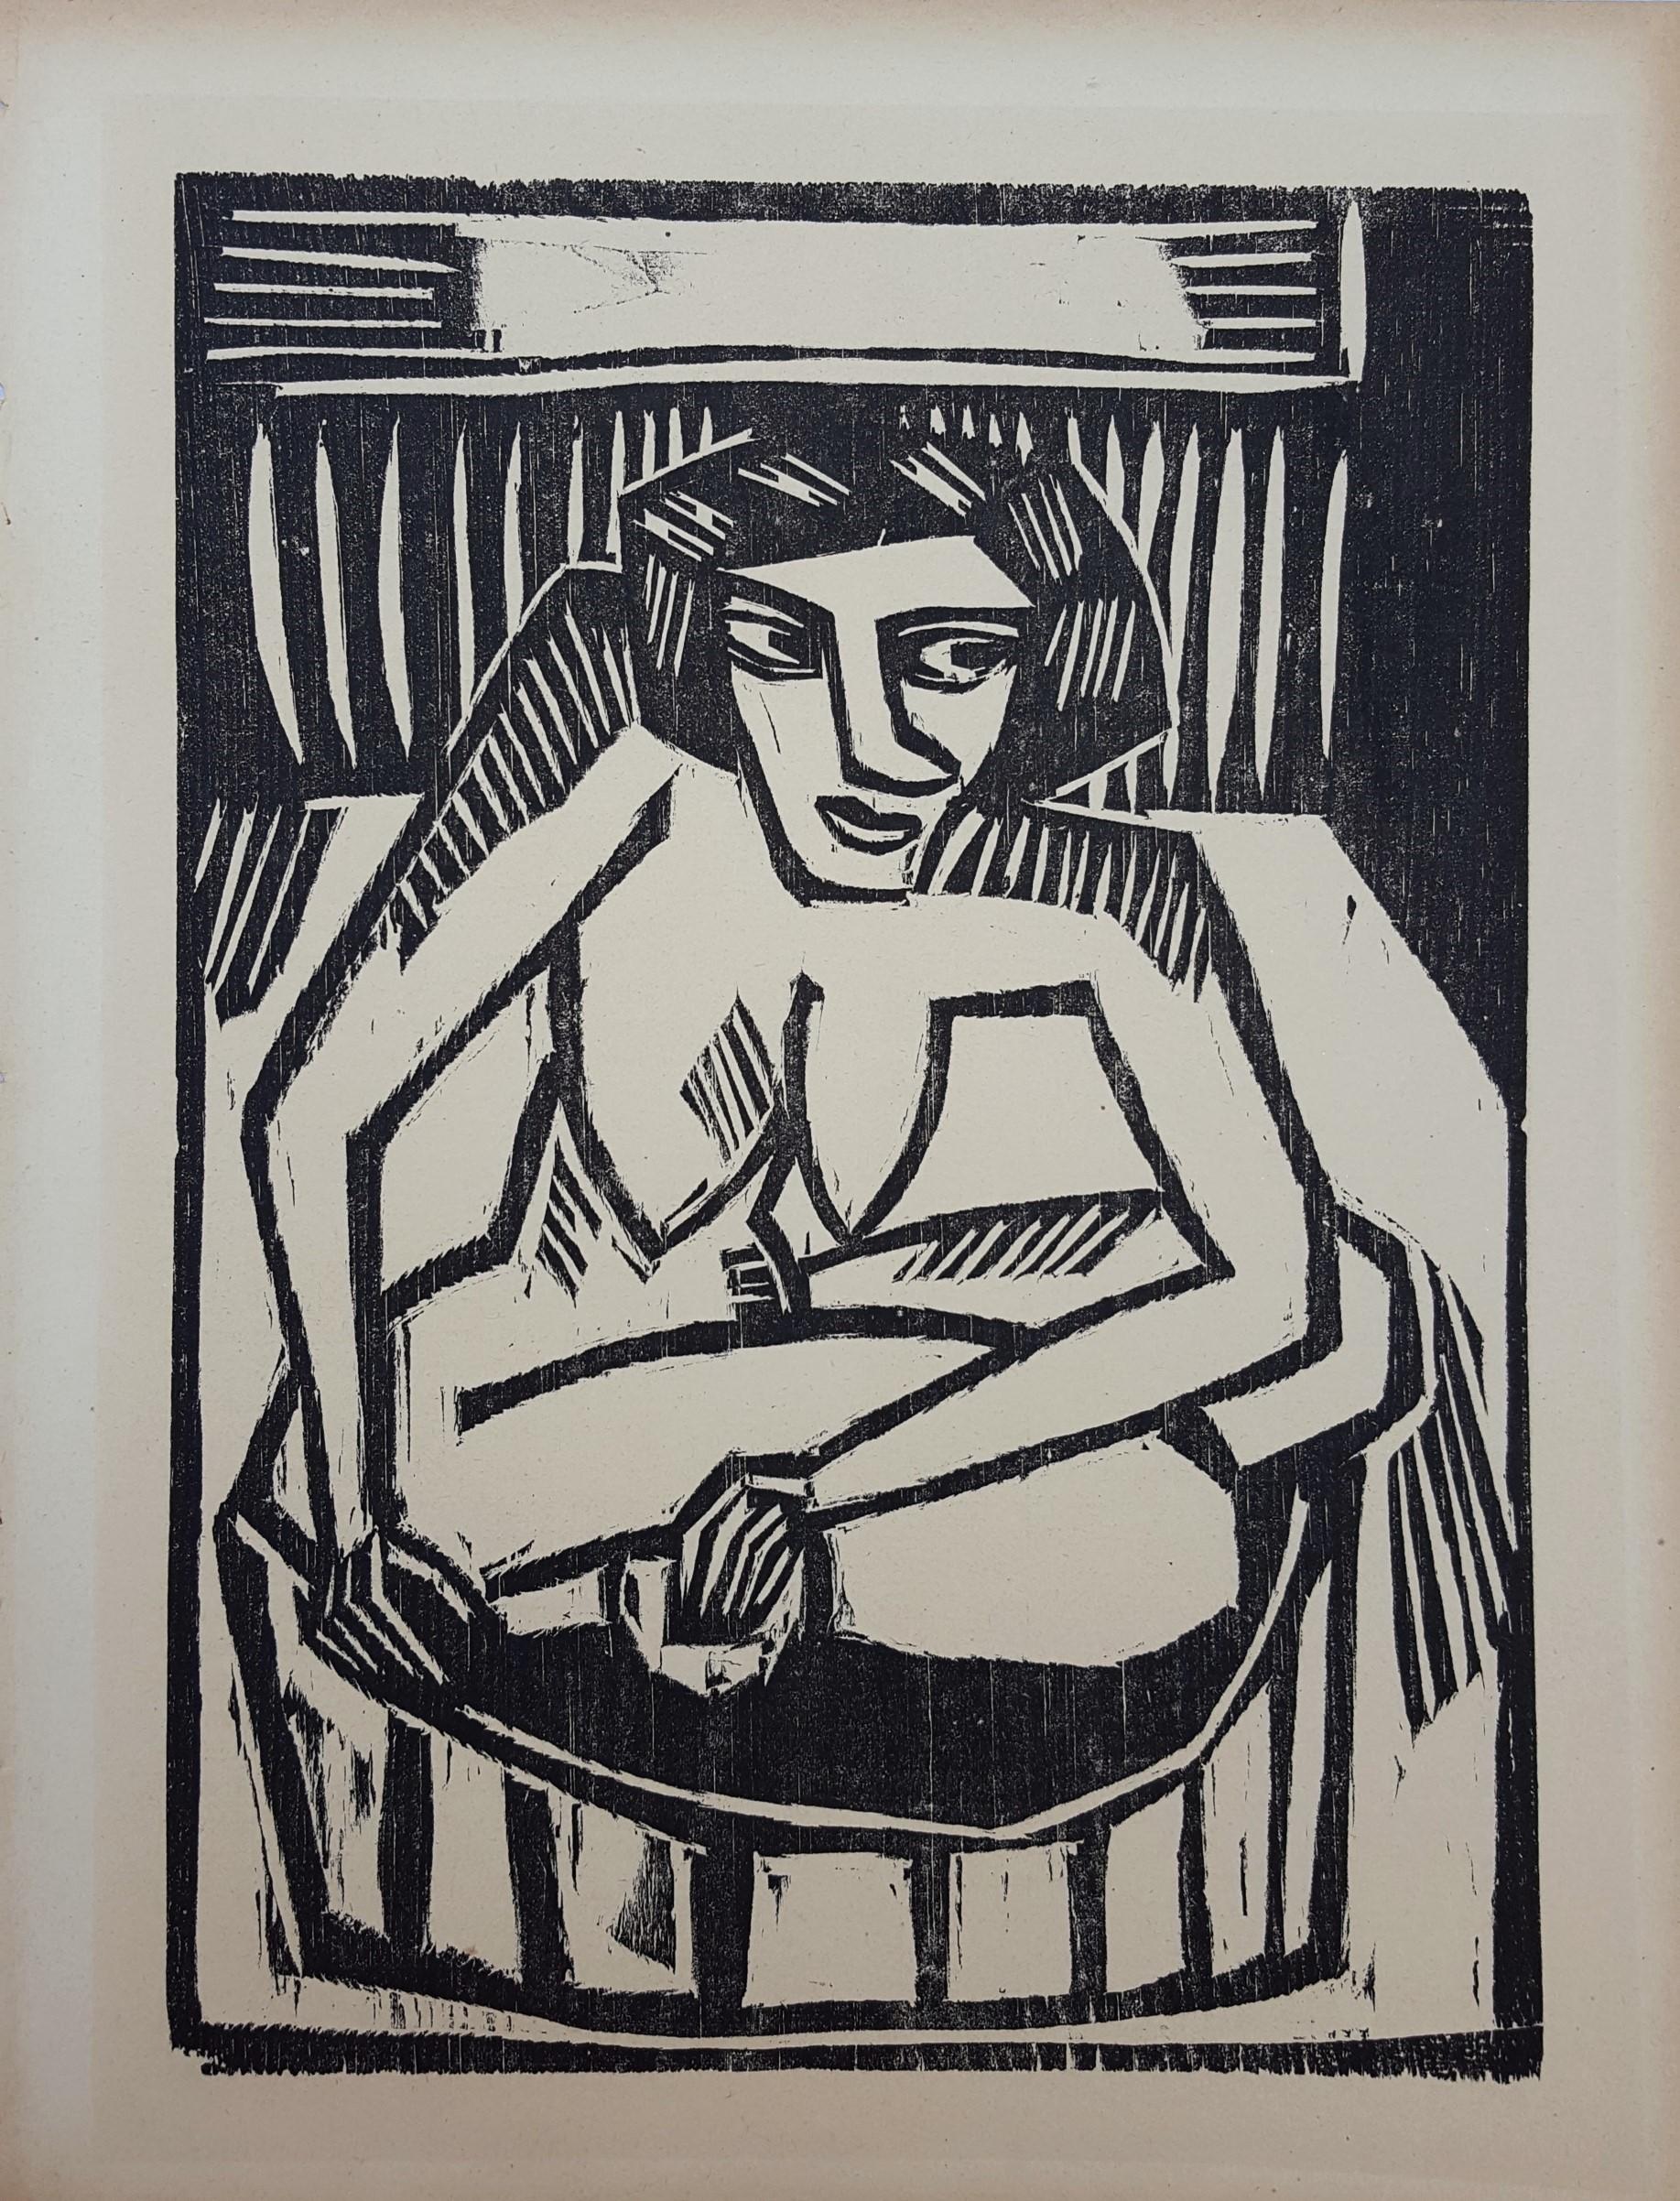 Frau in der Wanne (Woman in Tub) /// German Expressionism Schmidt-Rottluff Nude  - Black Nude Print by Karl Schmidt-Rottluff